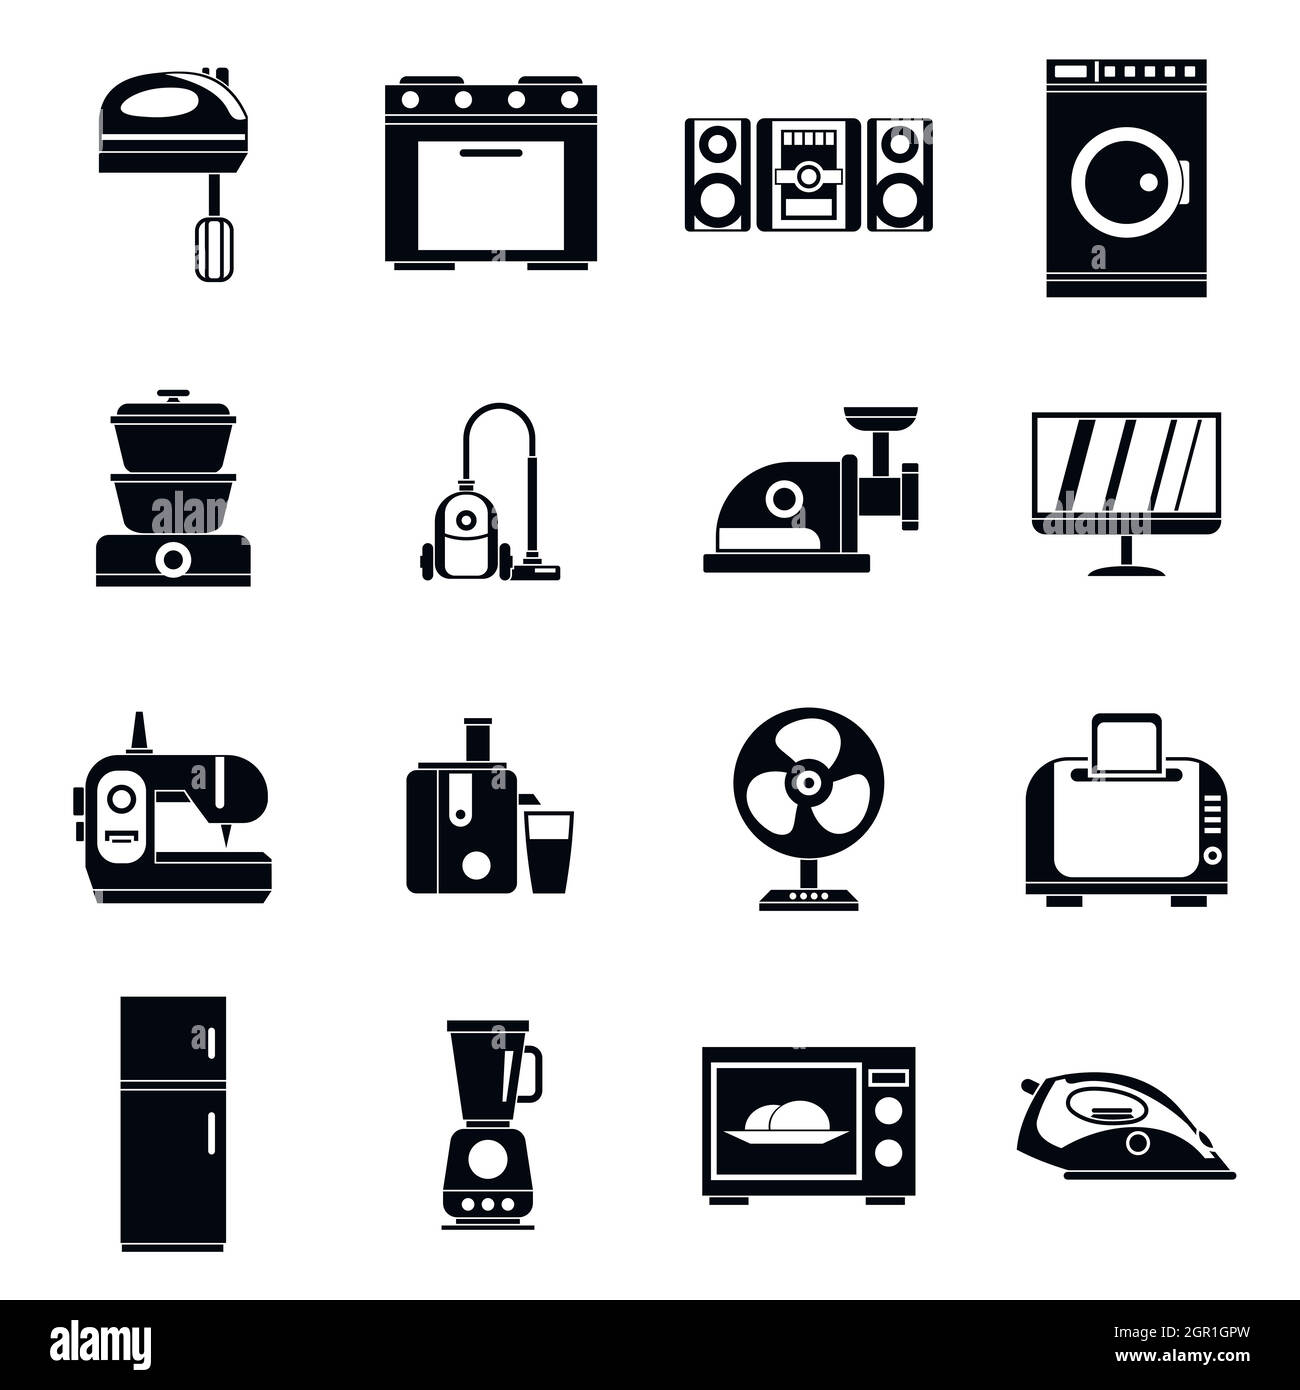 Haushaltsgeräte Icons Set, einfachen Stil Stock Vektor